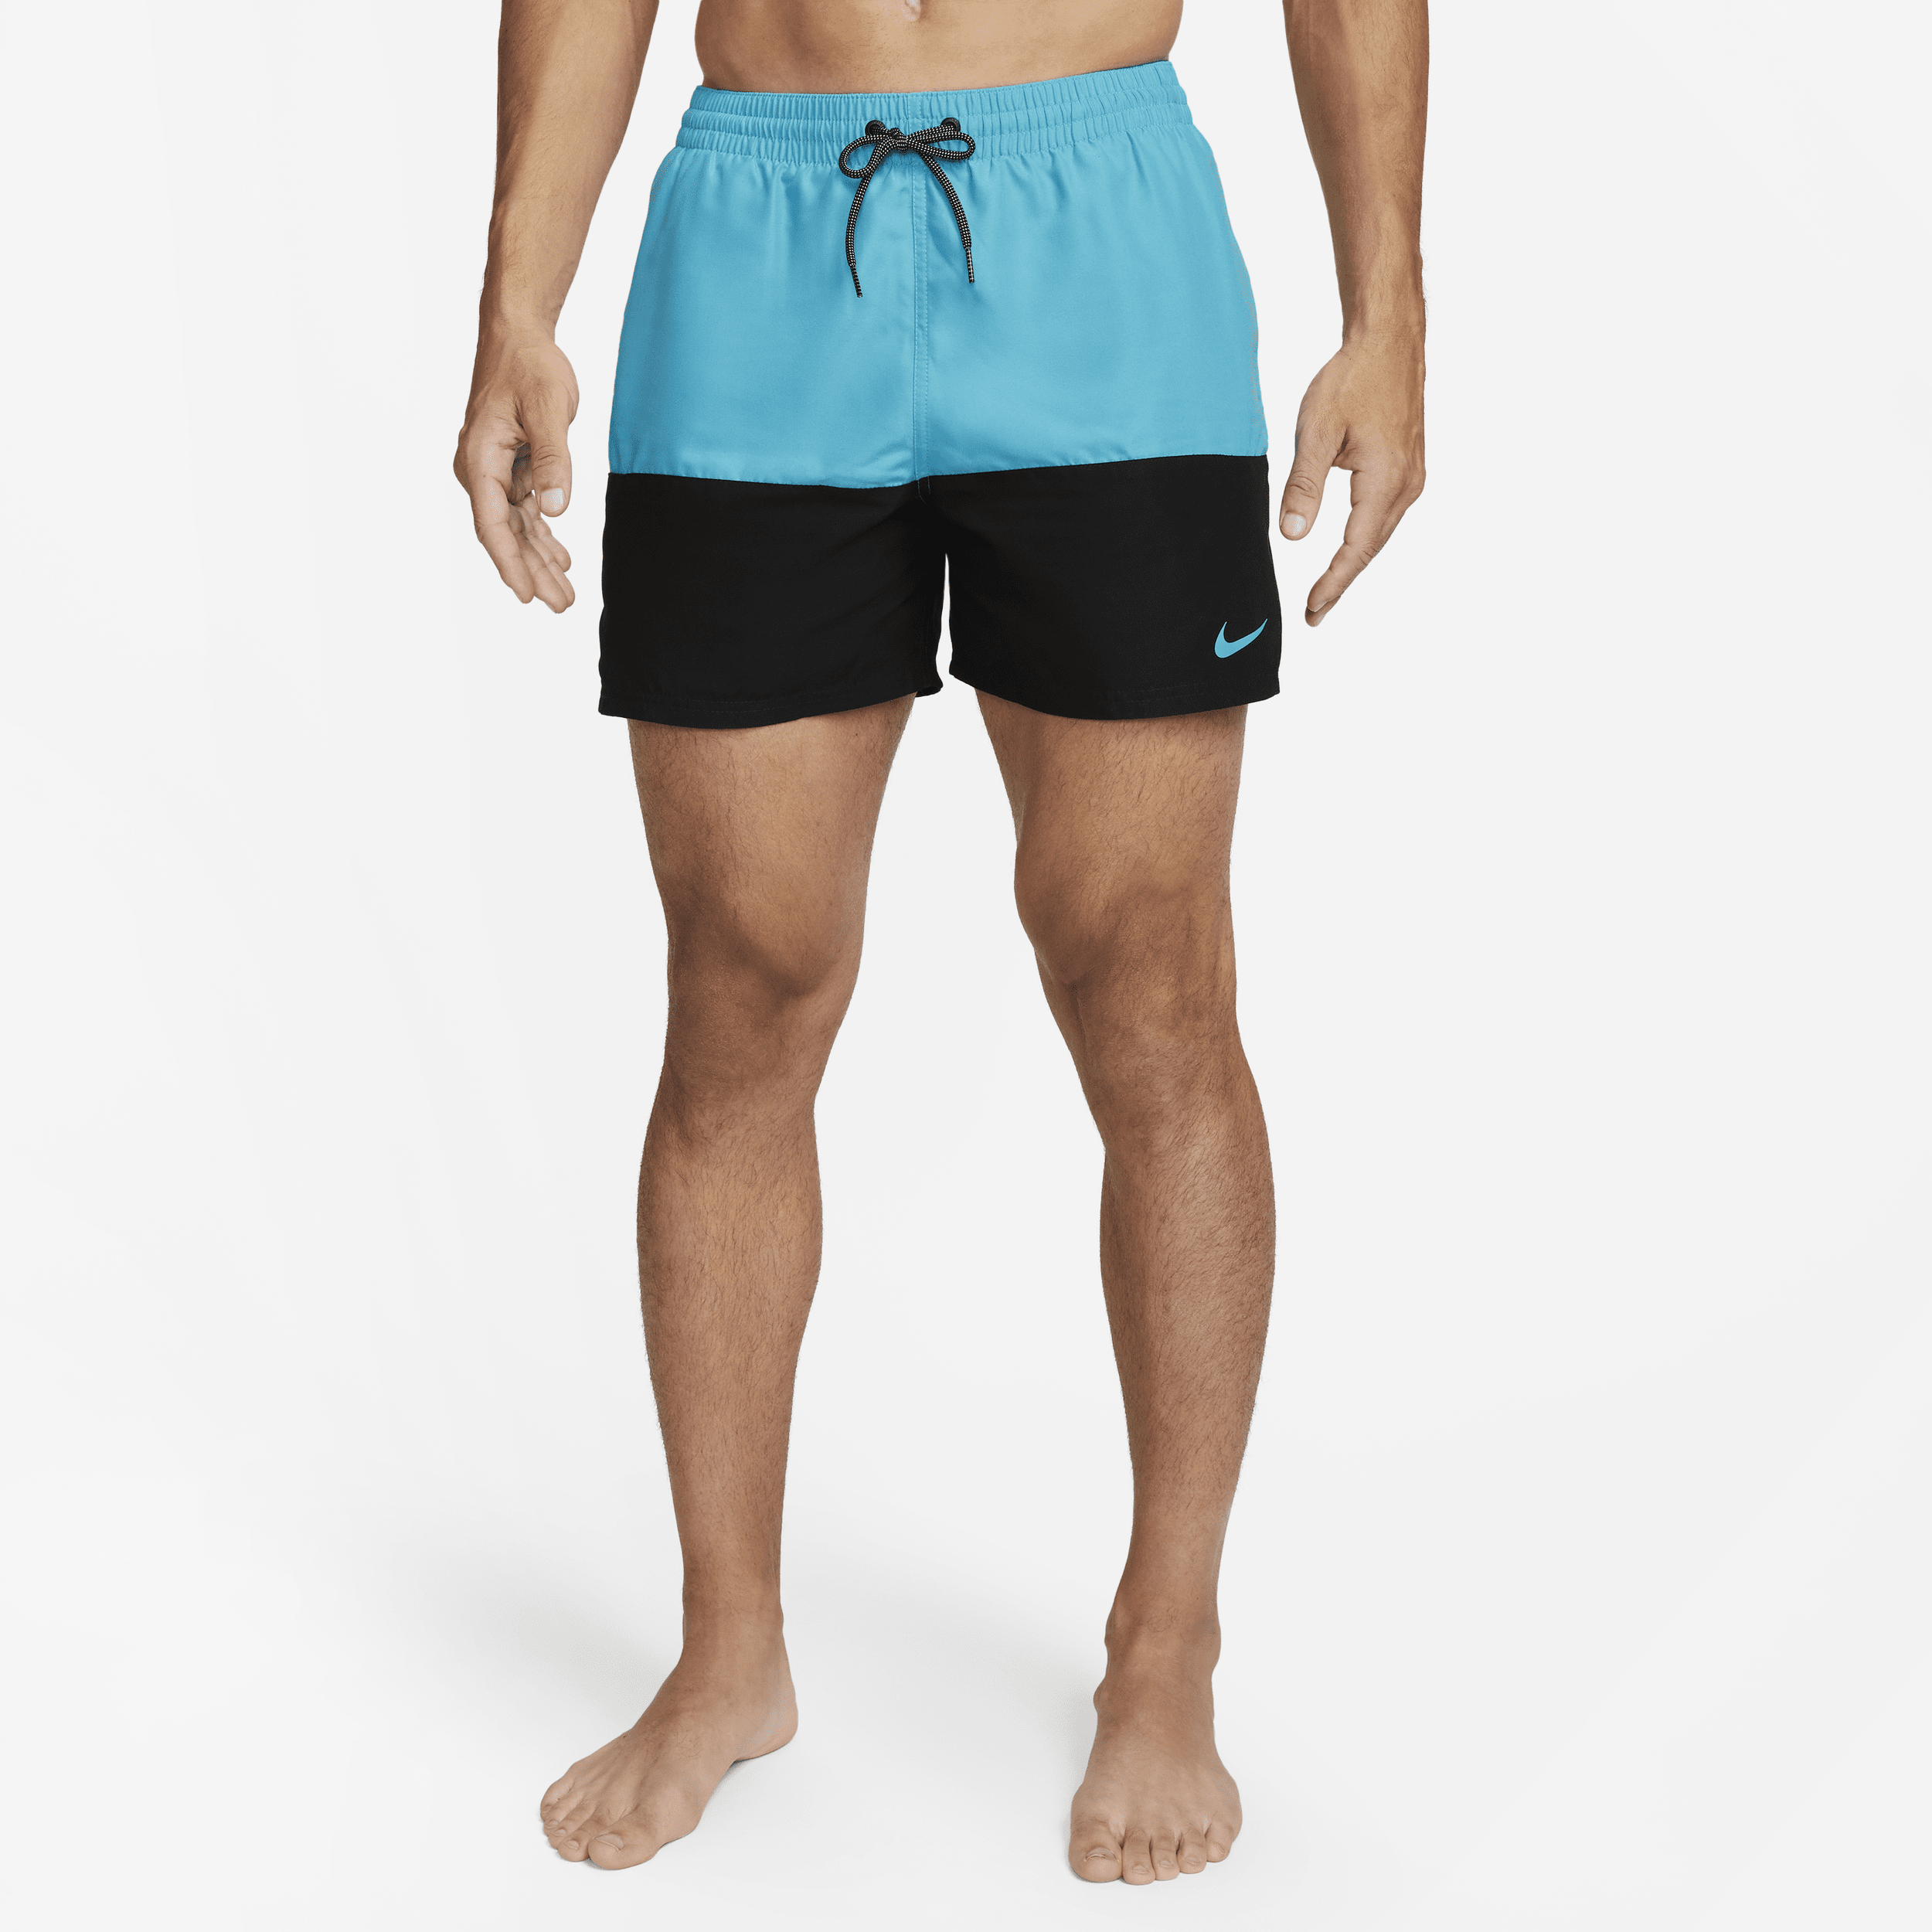 Nike Split Zwembroek voor heren (13 cm) - Blauw